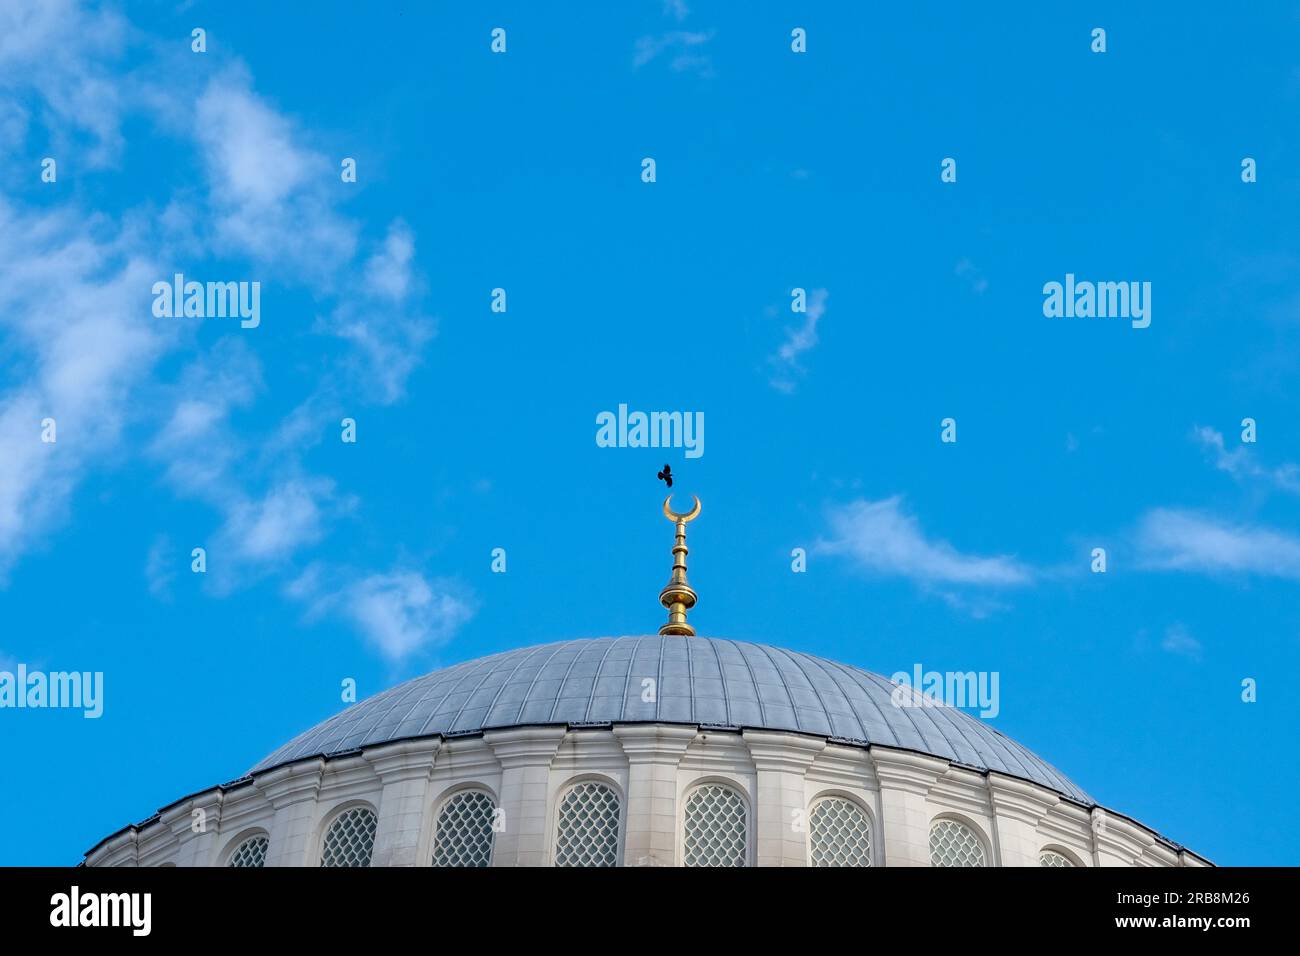 Minaret de mosquée et détails de dômes avec ciel bleu et fond d'oiseau. Concept de fond EID Mubarek. Mise au point sélective incluse. Espace ouvert. Banque D'Images